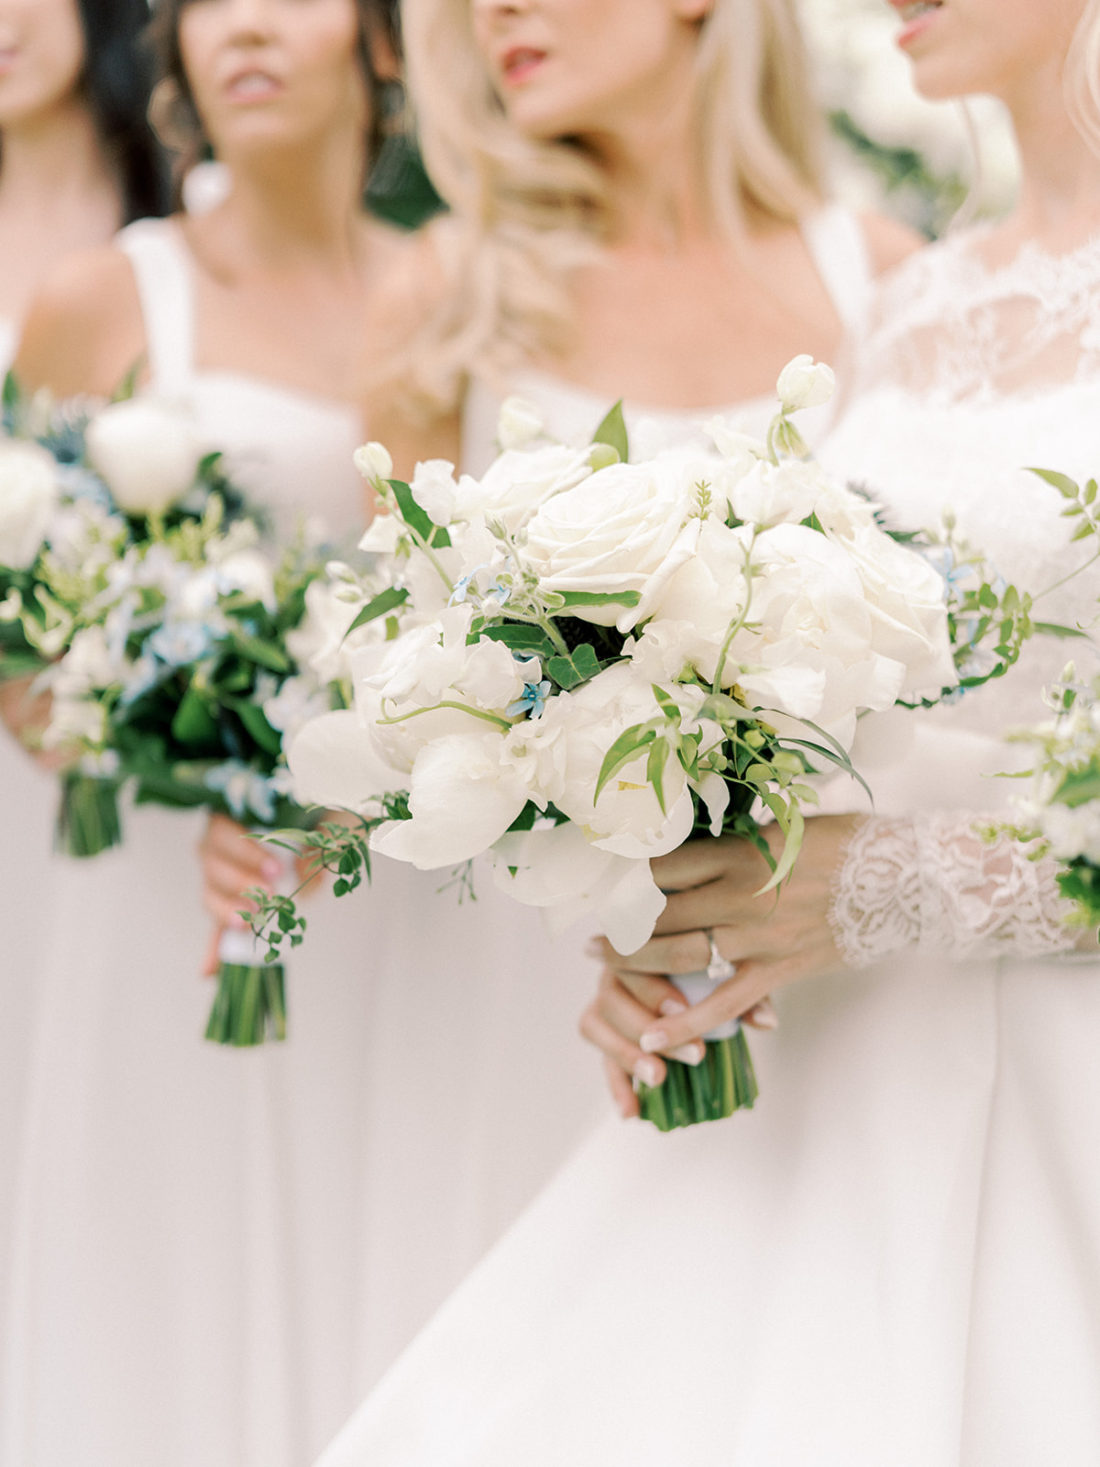 Lauren Nelson East Coast Wedding - Bridal Bouquet - Floral Ideas - CT Weddings - Stamford Yacht Club - Martha Stewart Weddings - Over The Moon Weddings